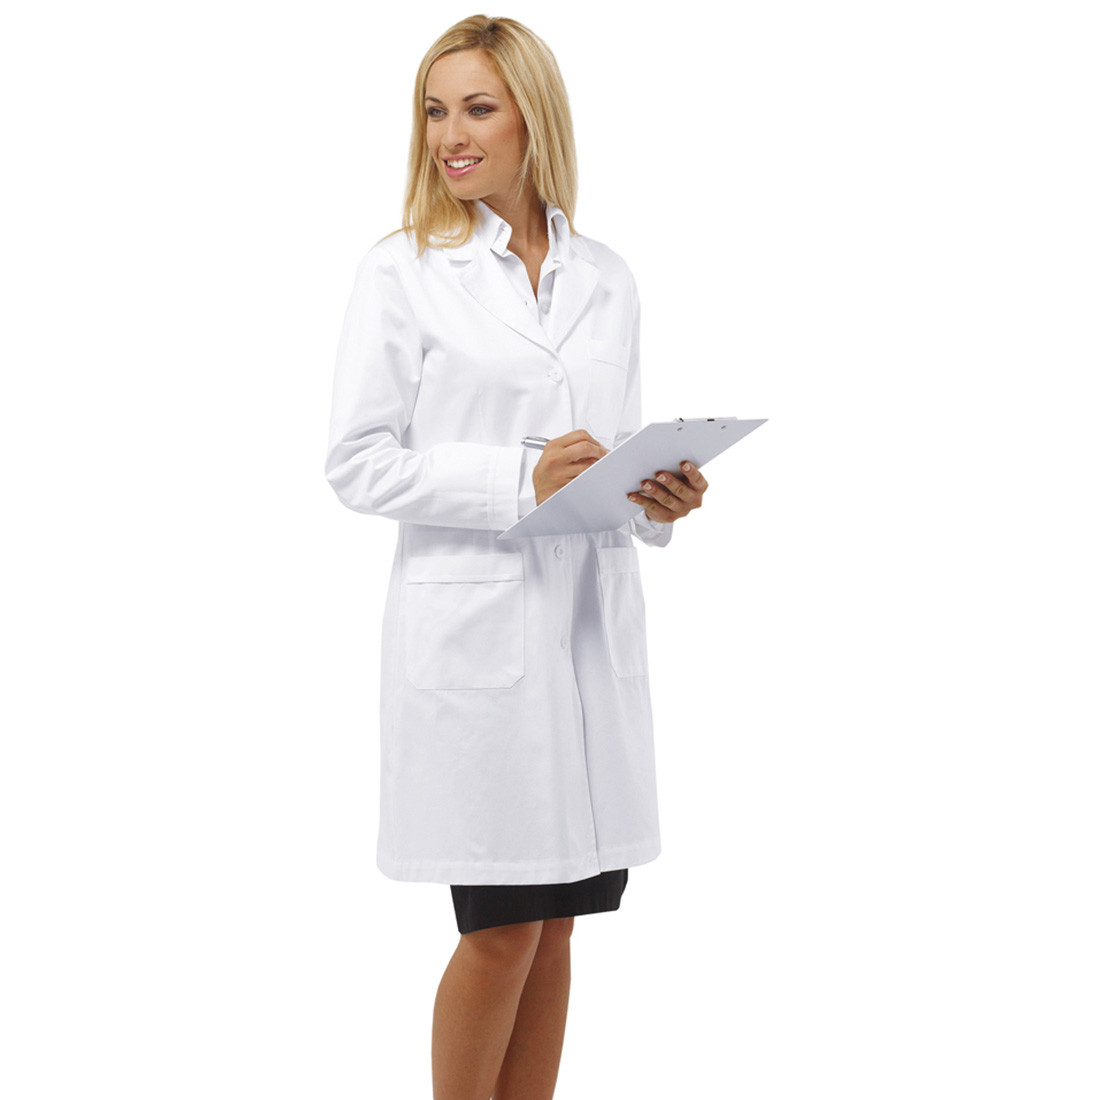 REYNARD women's medical coat - Safetywear